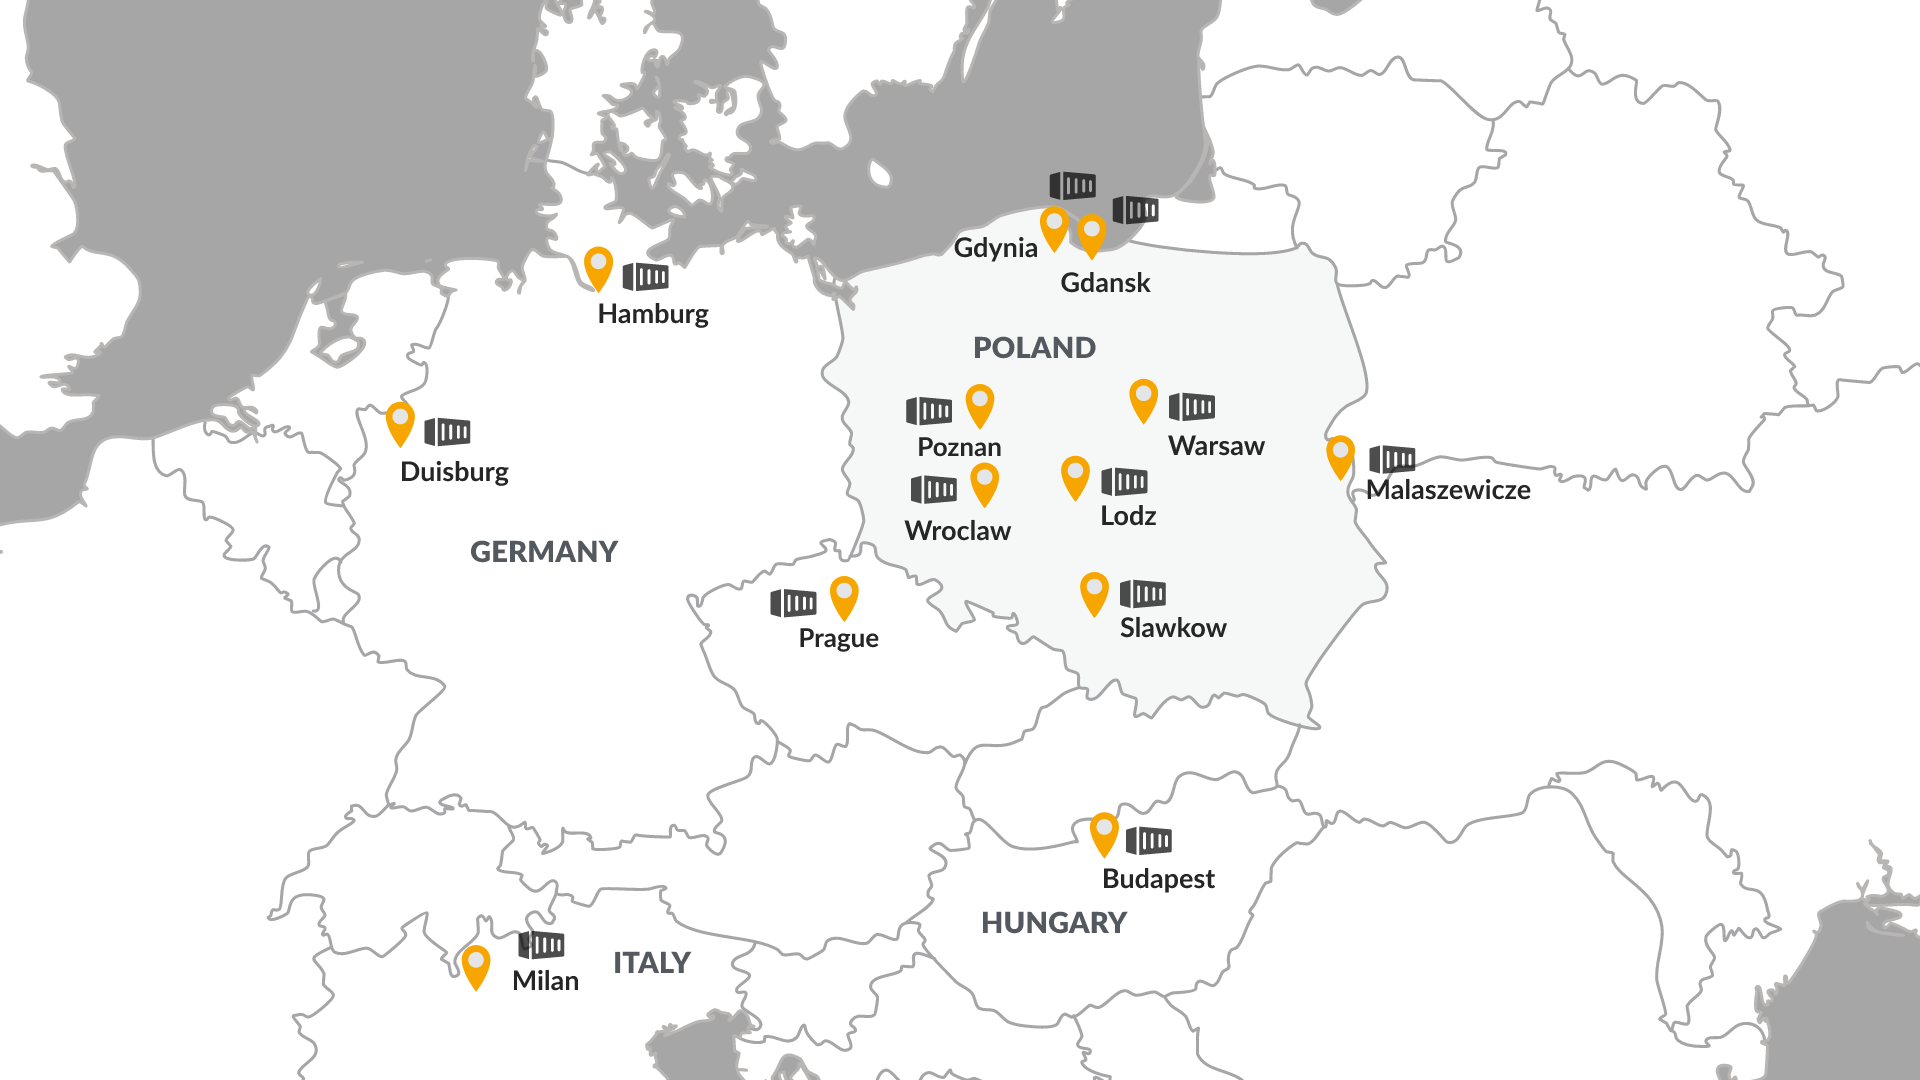 Depots in Europe 